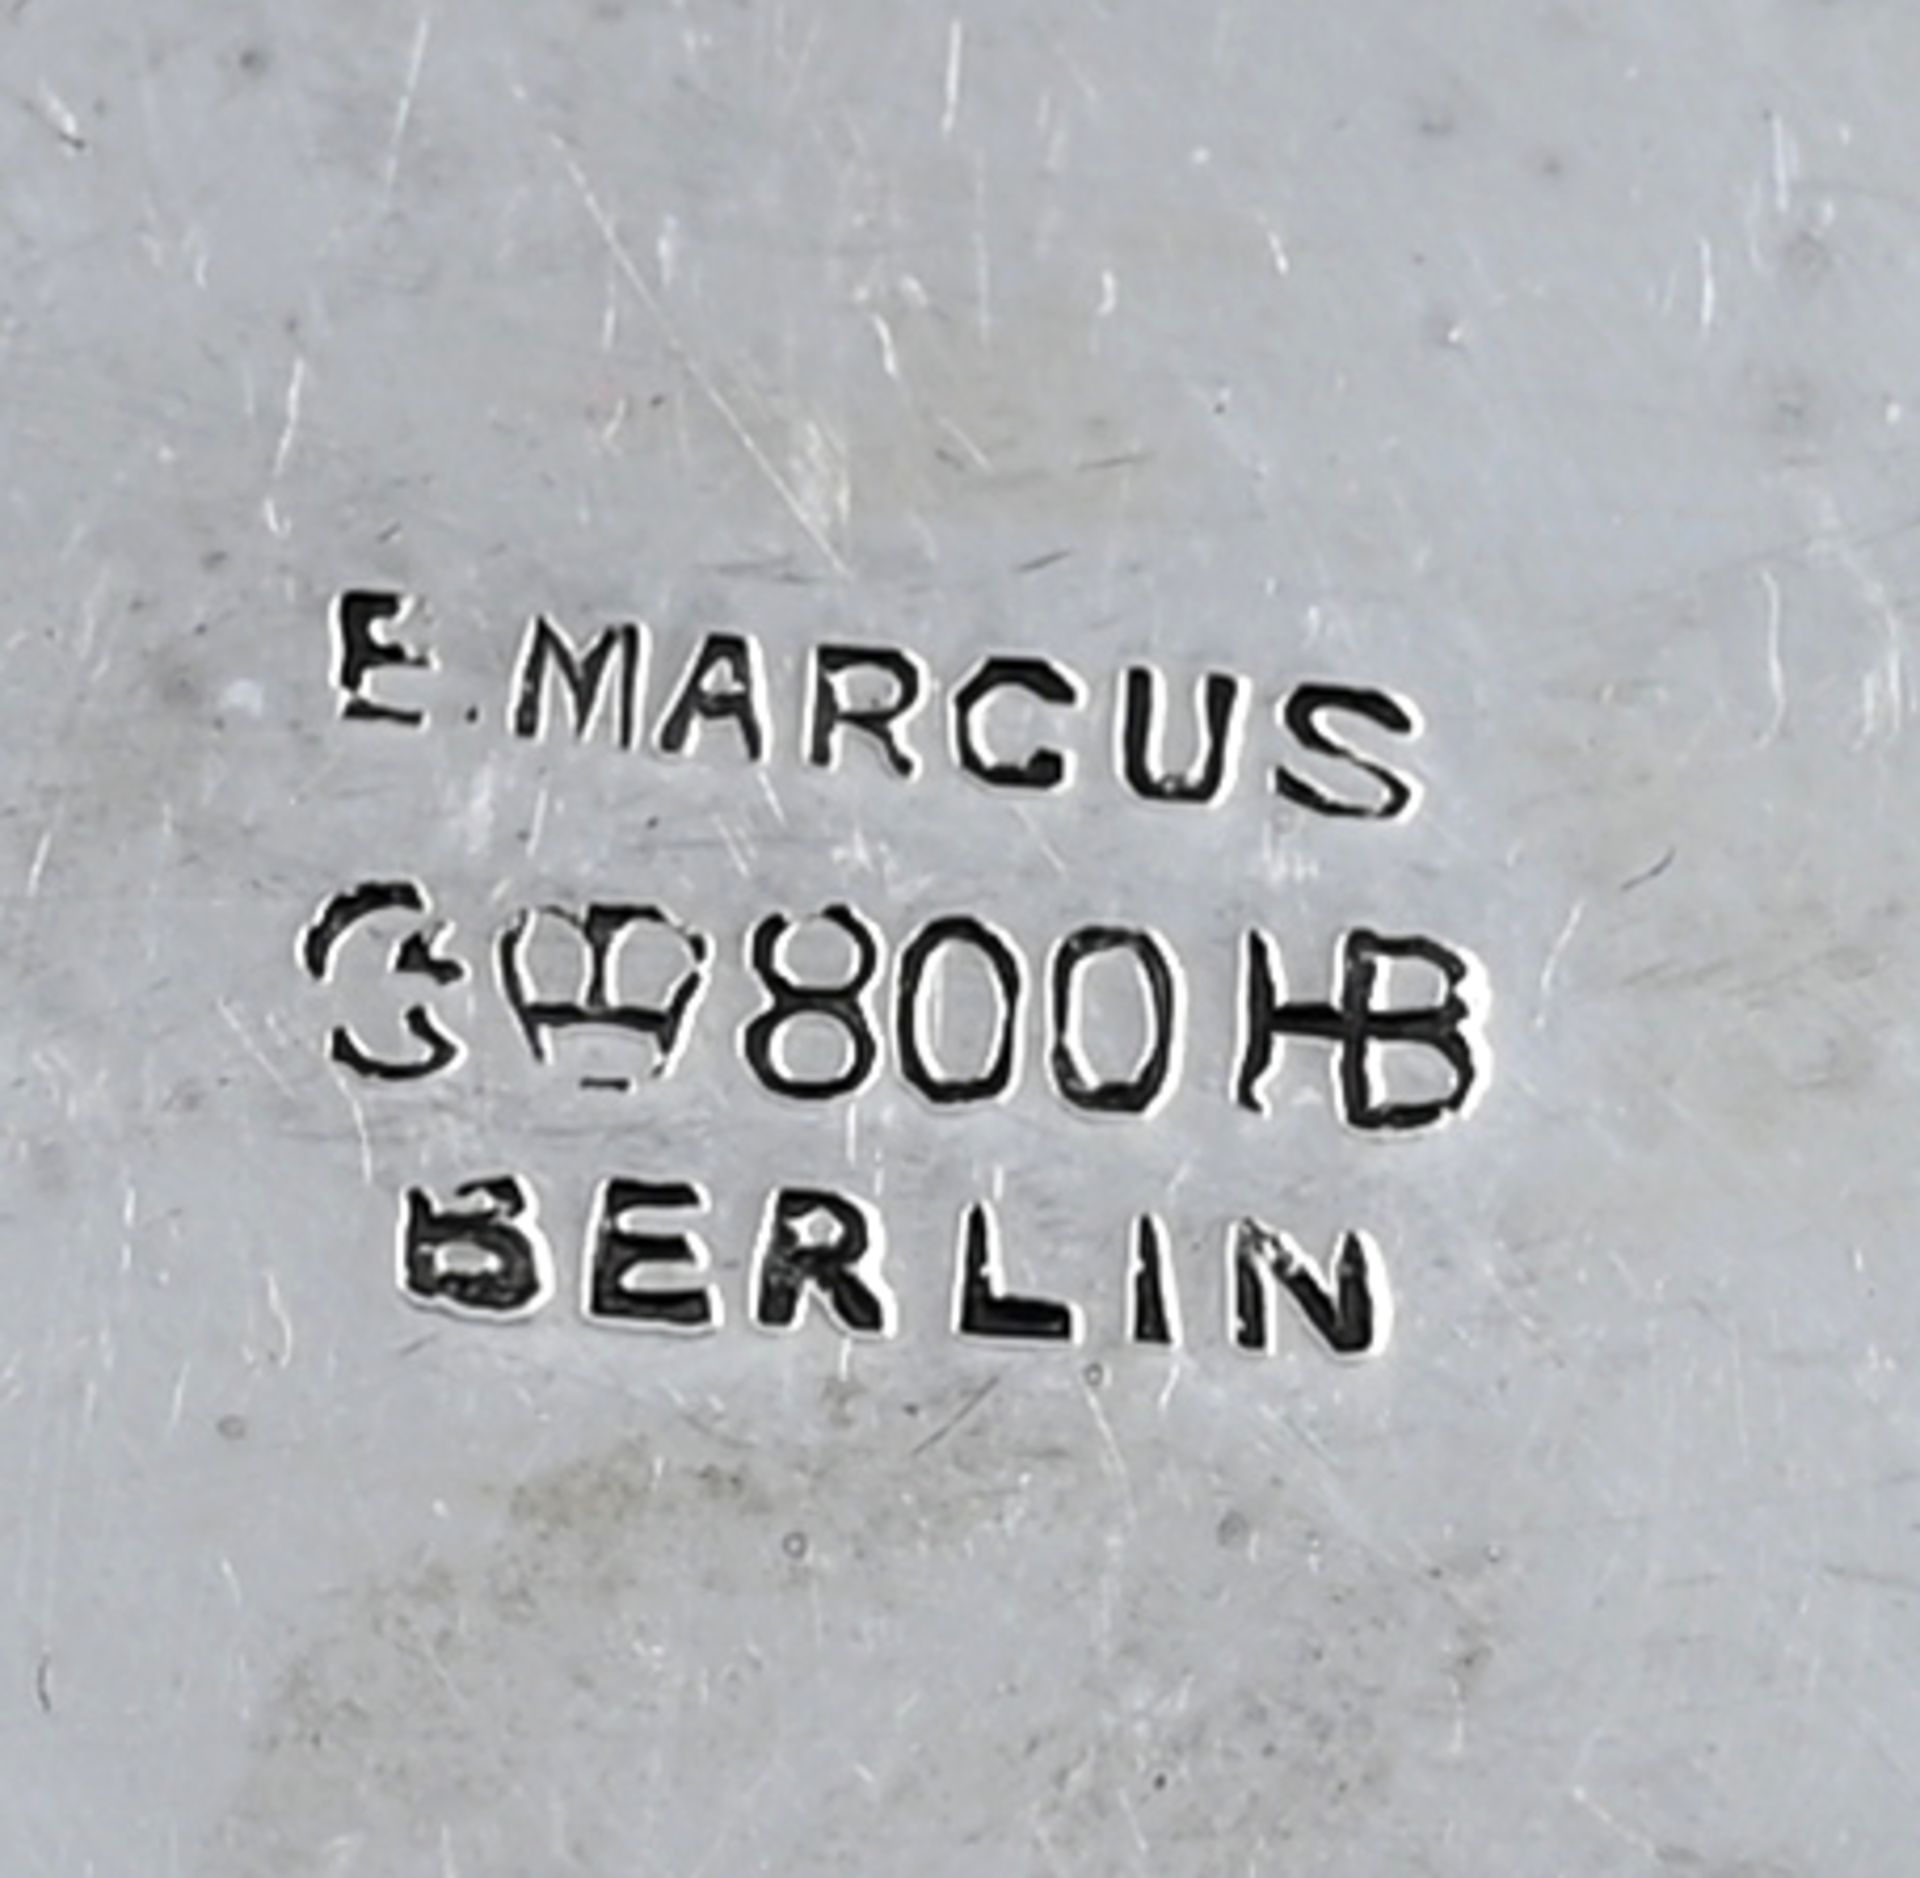 1 Teekanne auf Rechaud (3-teilig) jew. Silber 800 deutsch Hermann BEHRND, Dresden, - Image 4 of 4